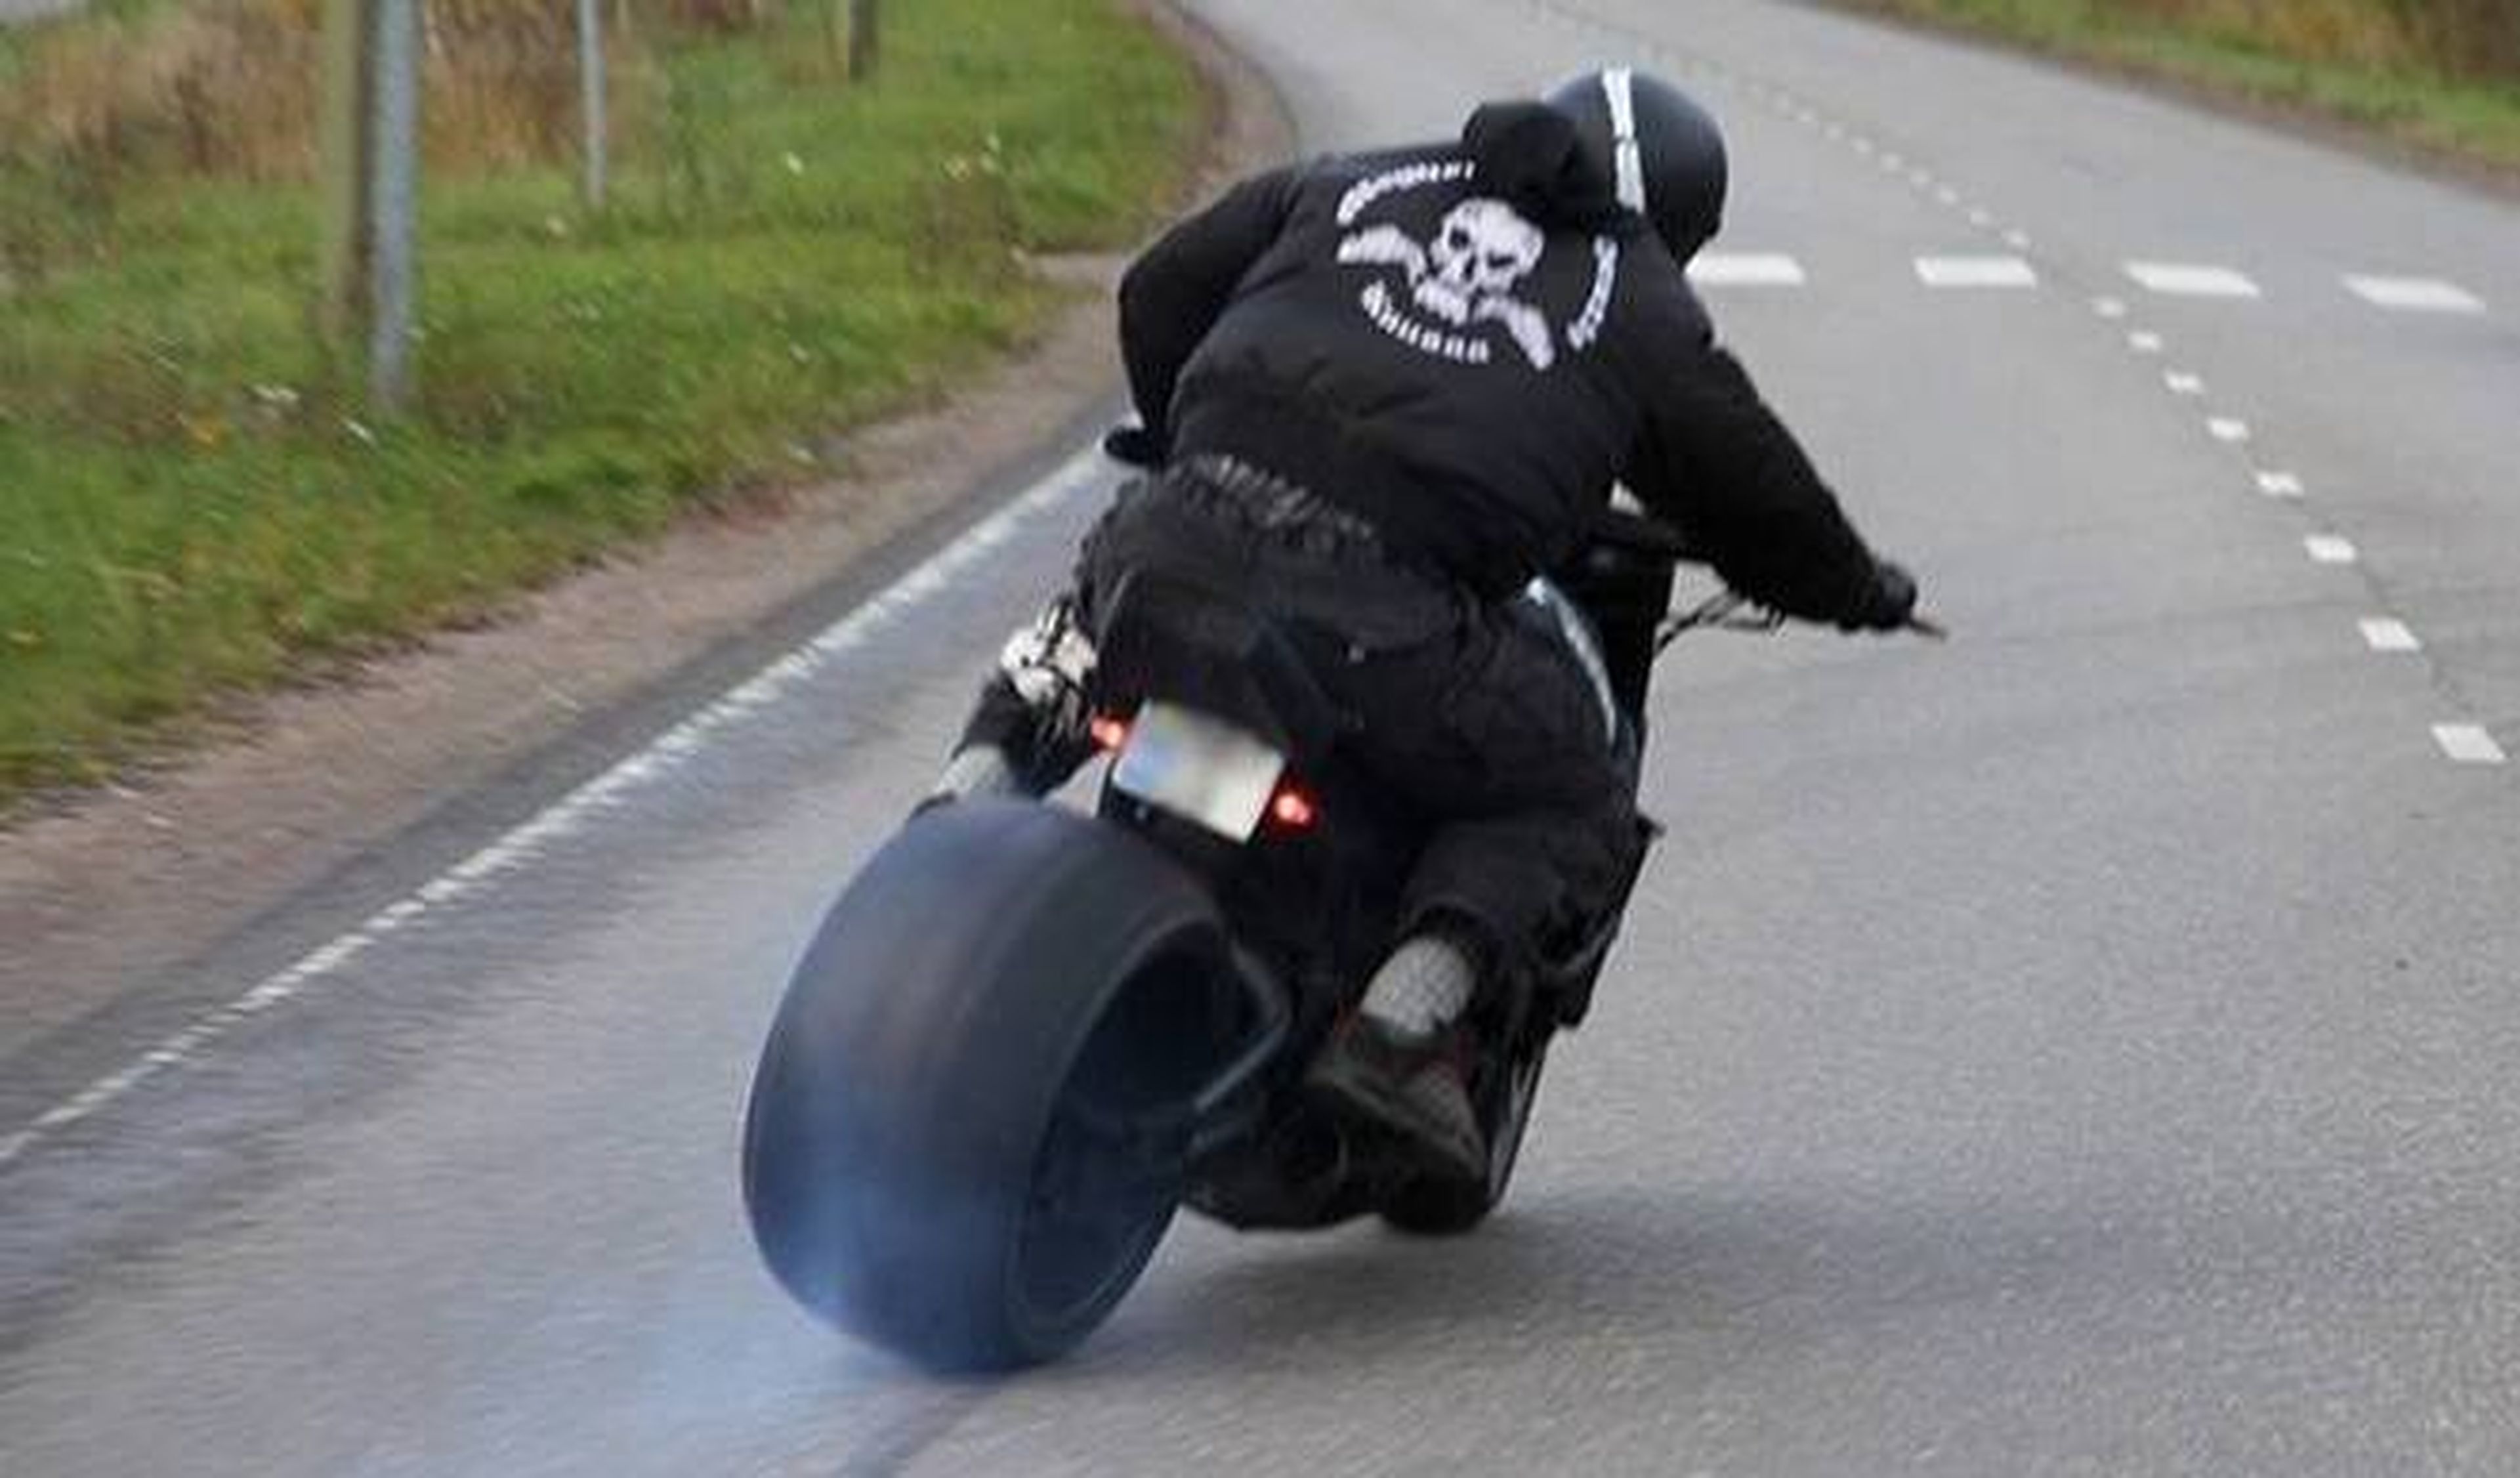 Vídeo: MAD Kuusaa, derrapes locos en moto por Finlandia